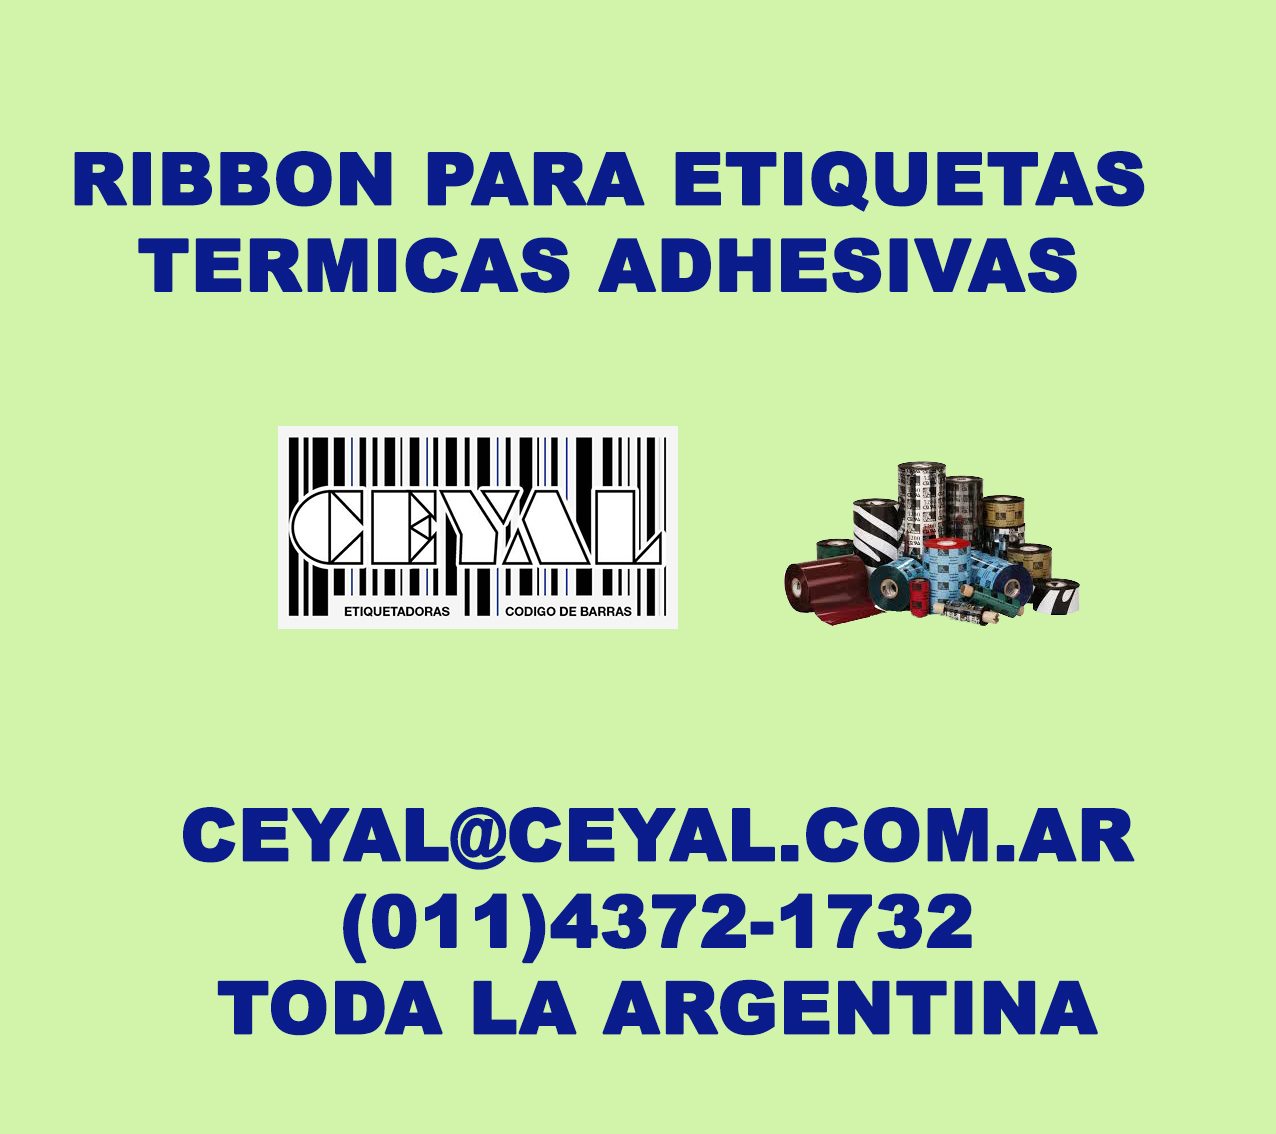 Fabrica de etiquetas adhesivas Merchandising Argentina